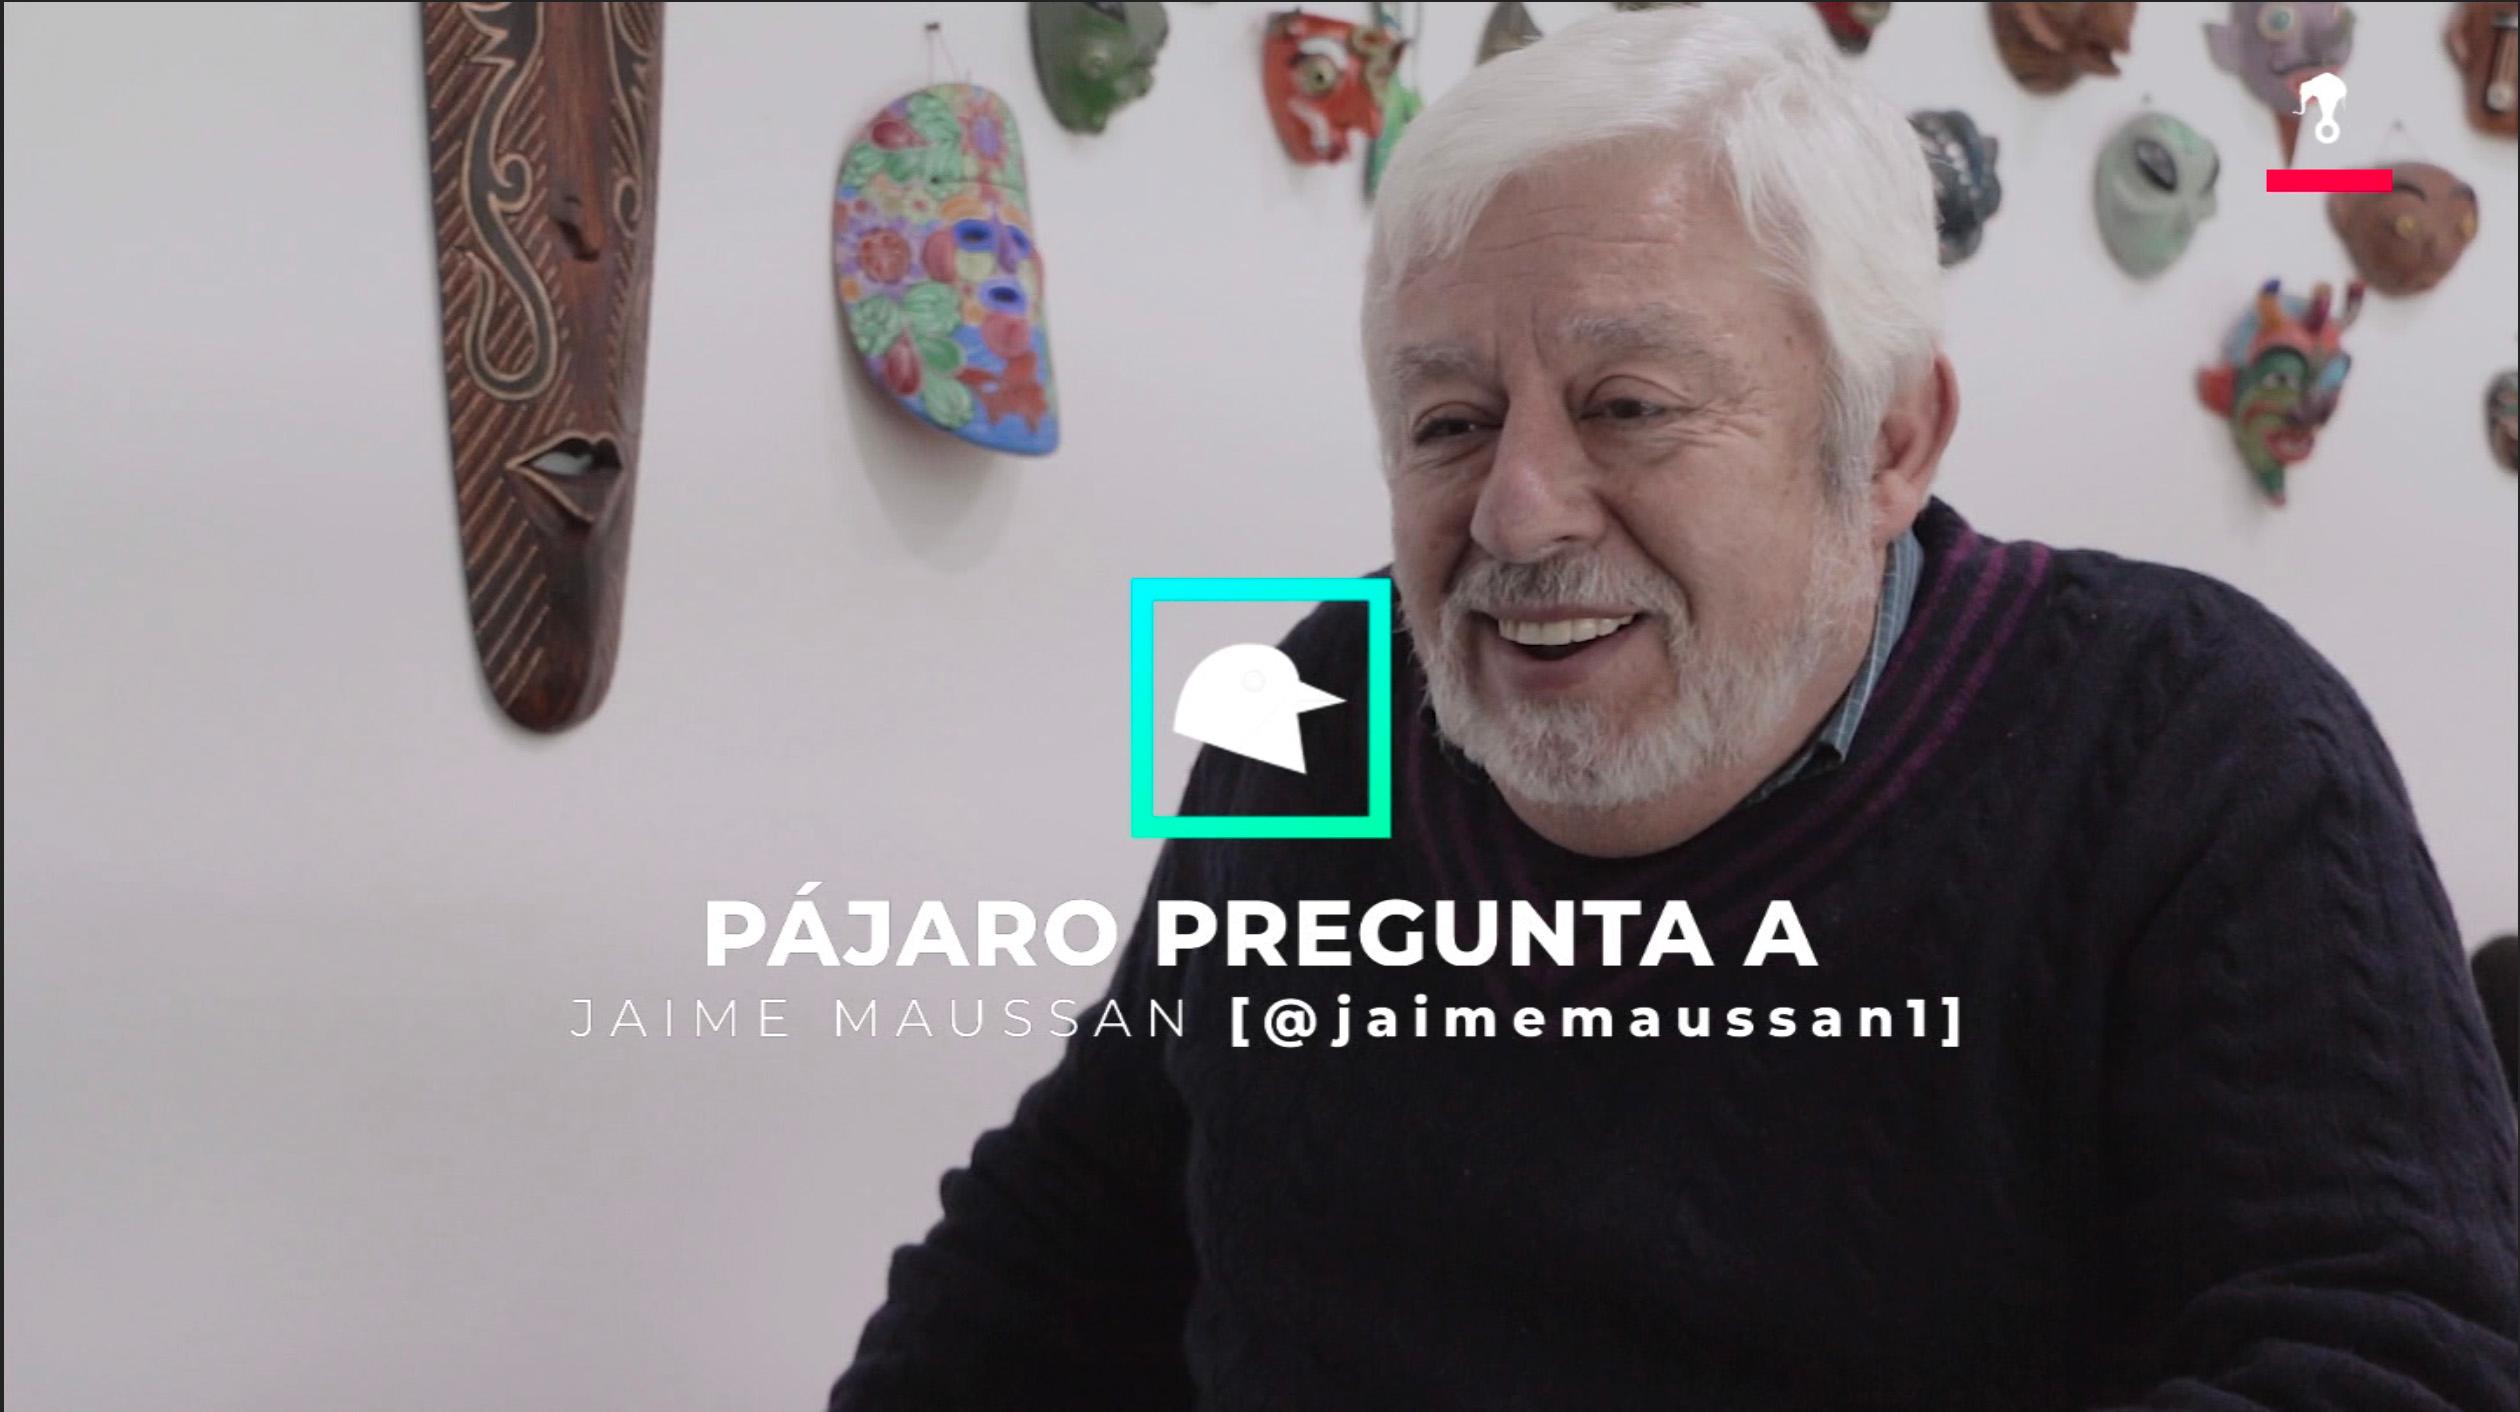 #PájaroPregunta: Jaime Maussan habla sobre la vida en otros planetas, Trump y el cambio climático